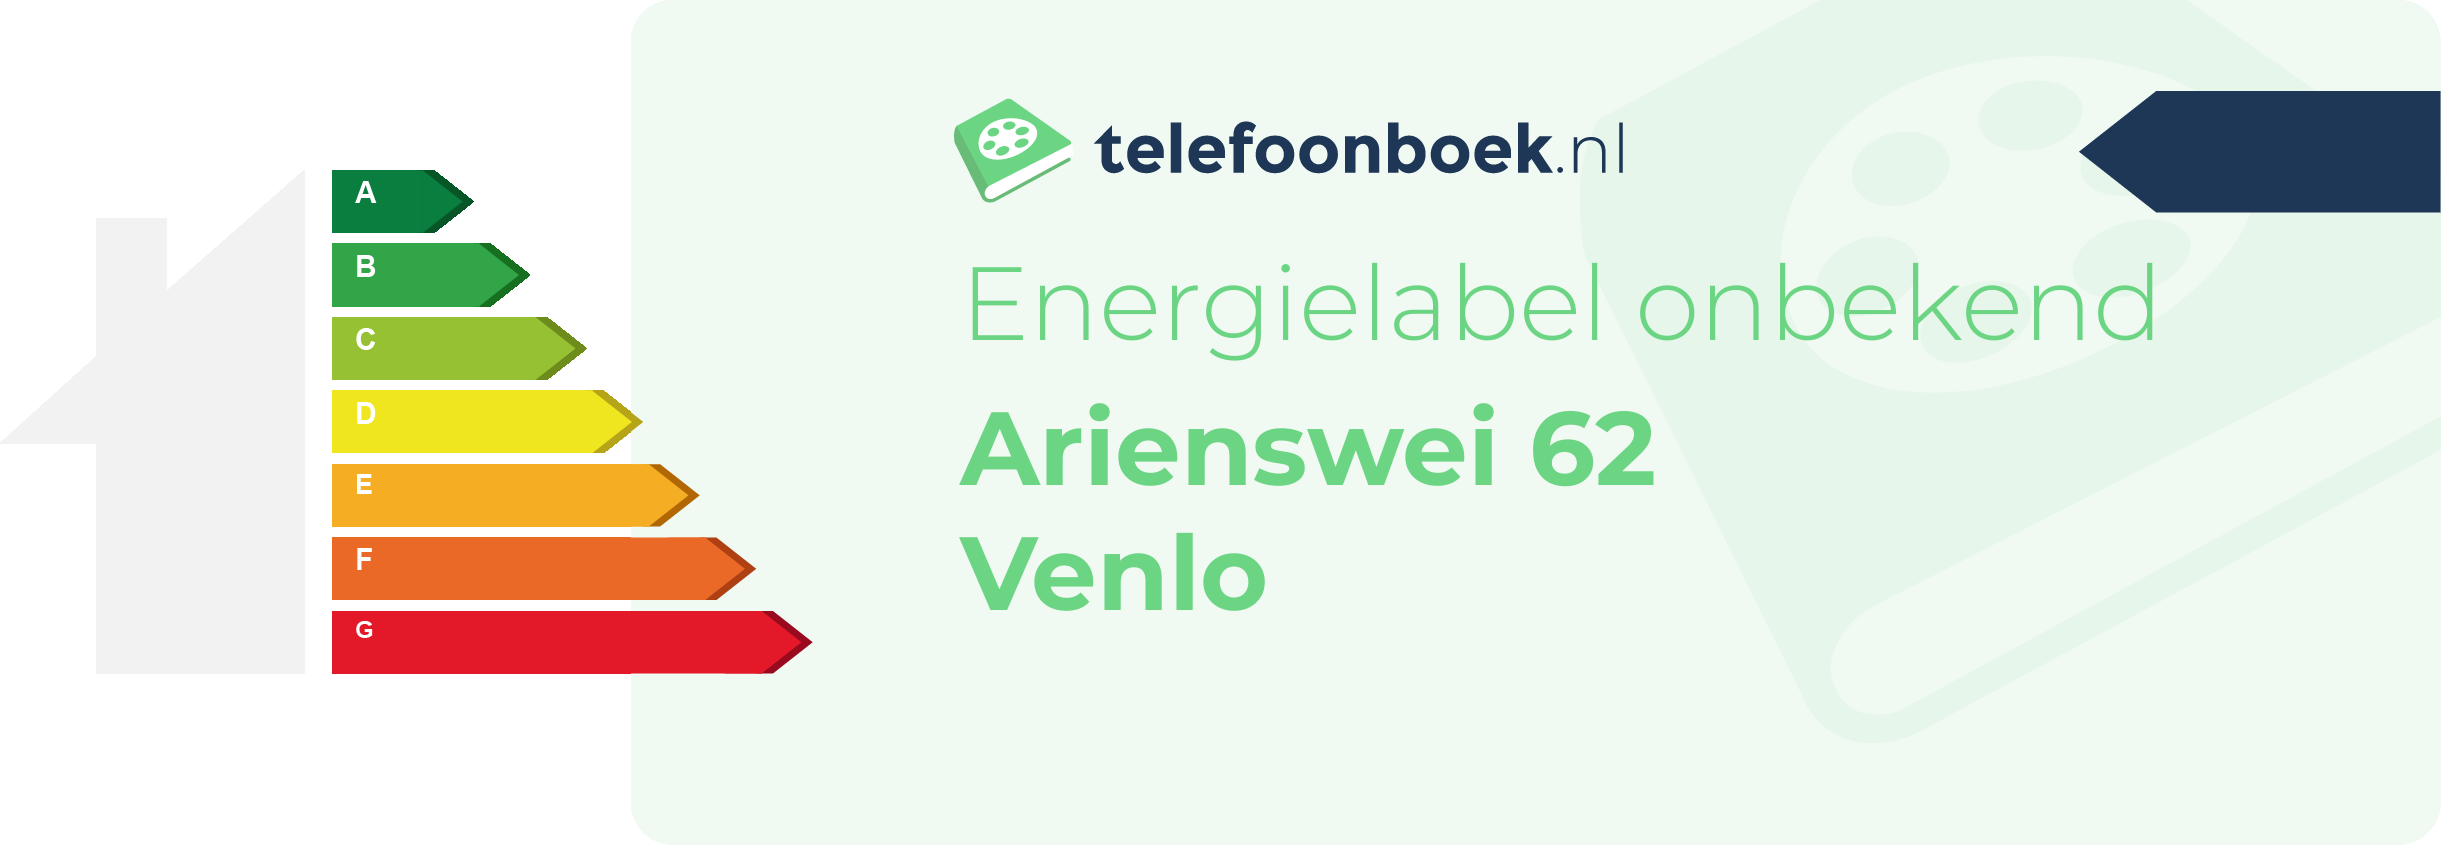 Energielabel Arienswei 62 Venlo